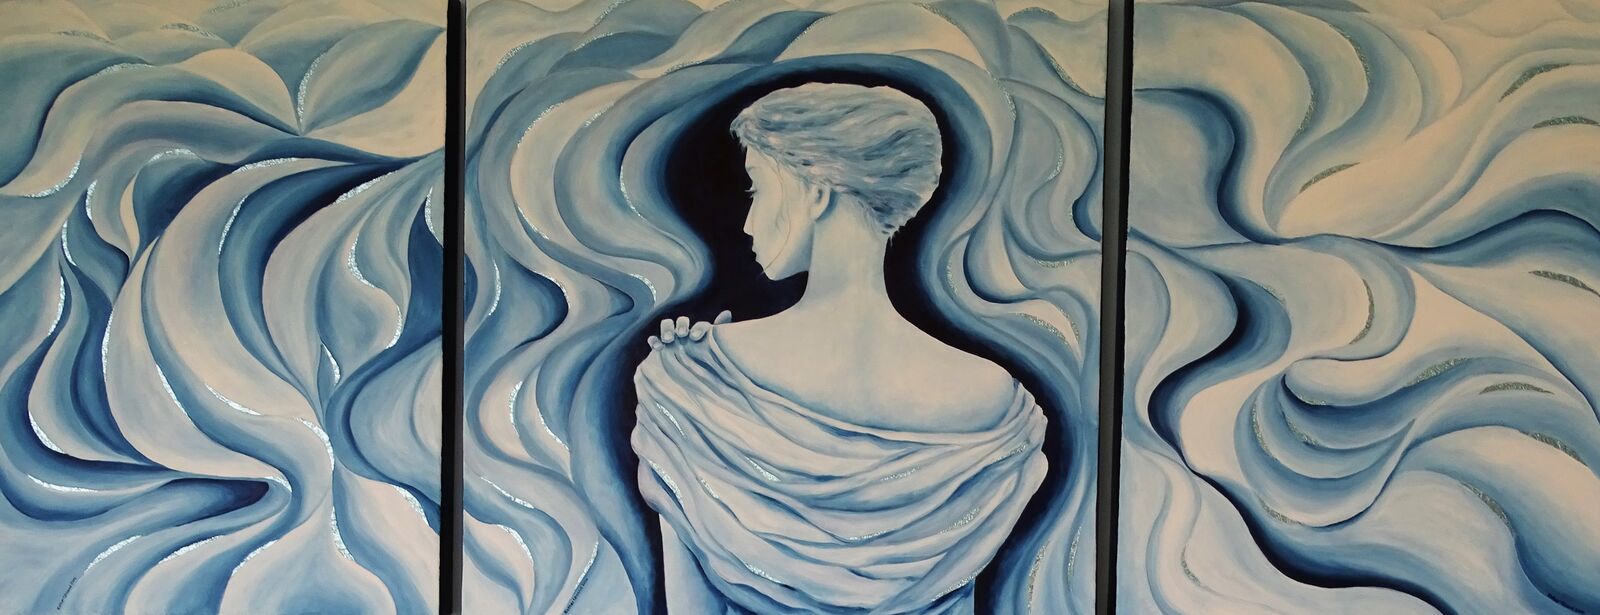 Frau in blau, Triptichon, 2004